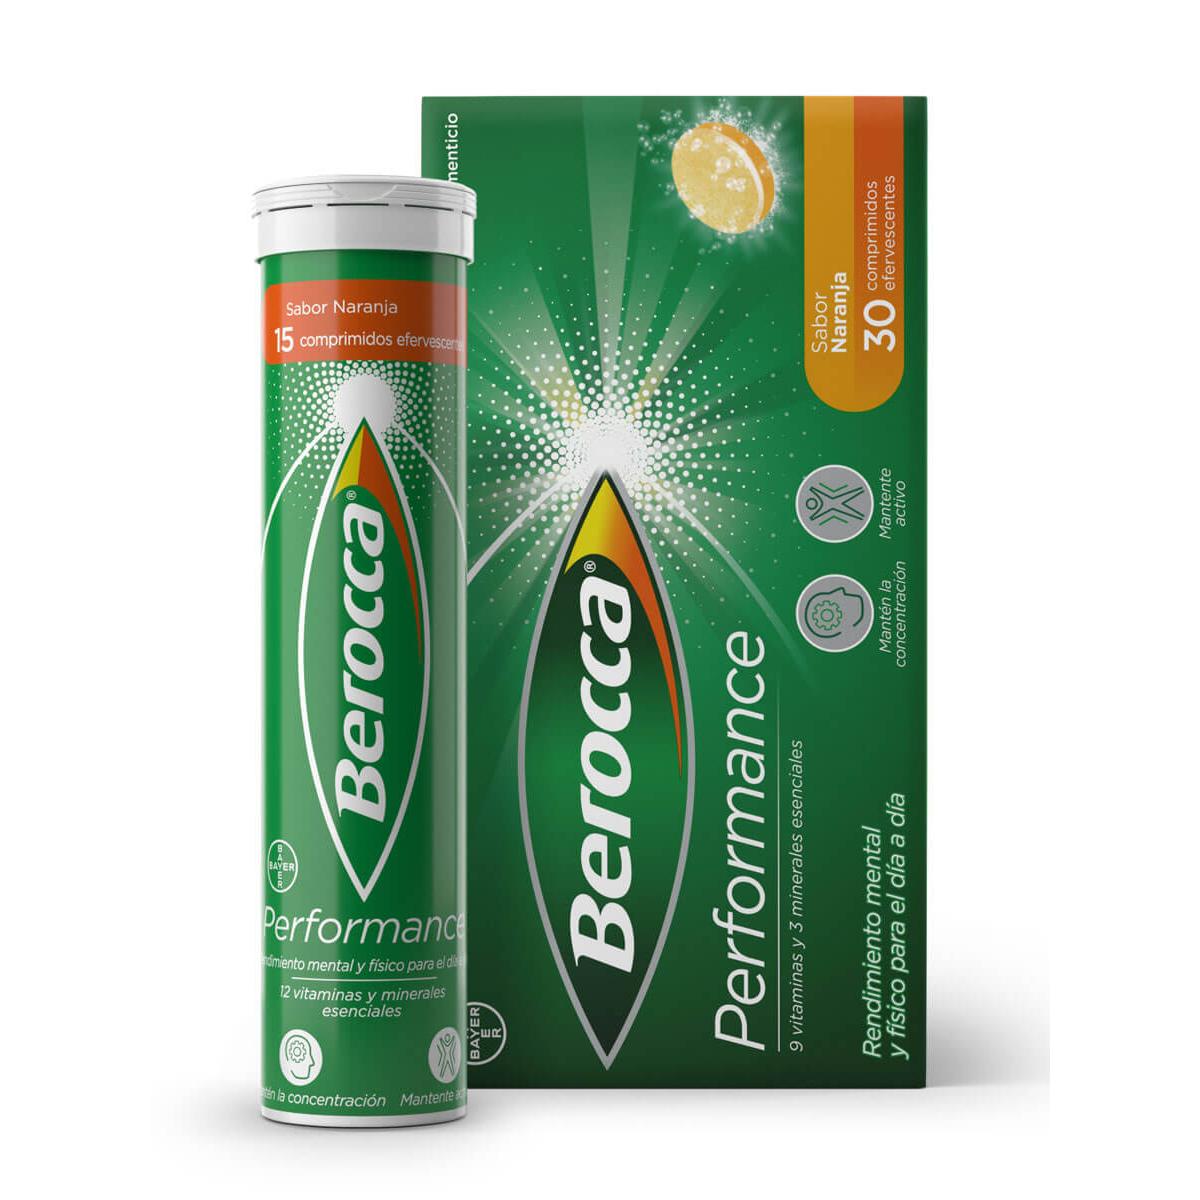 Berocca - Berocca performance sabor naranja 30 comprimidos efervescentes